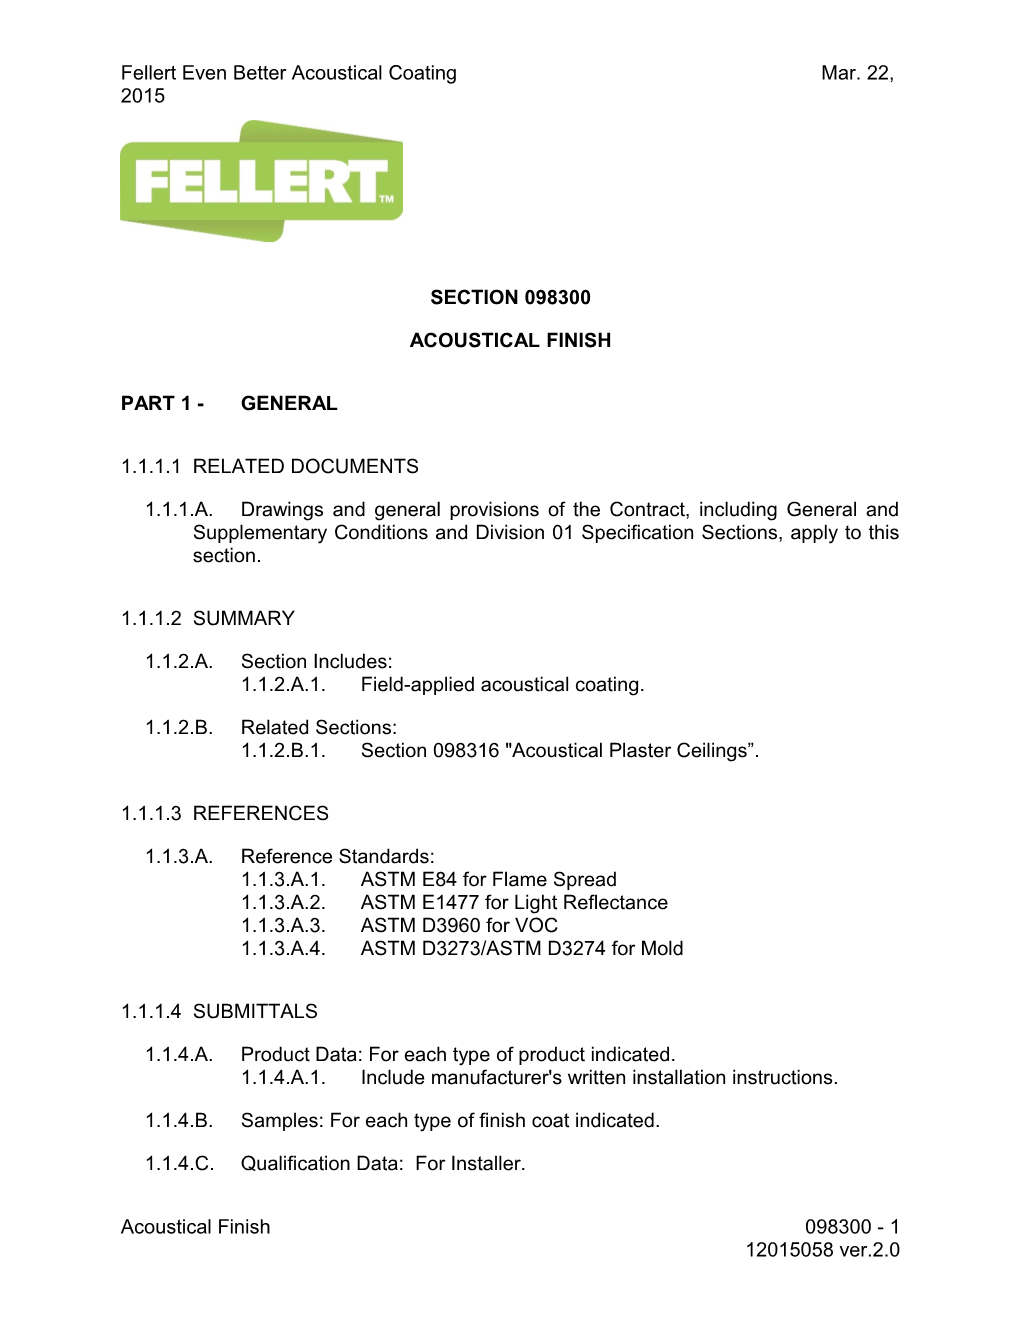 Fellert Even Better Acoustical Coating Mar. 22, 2015